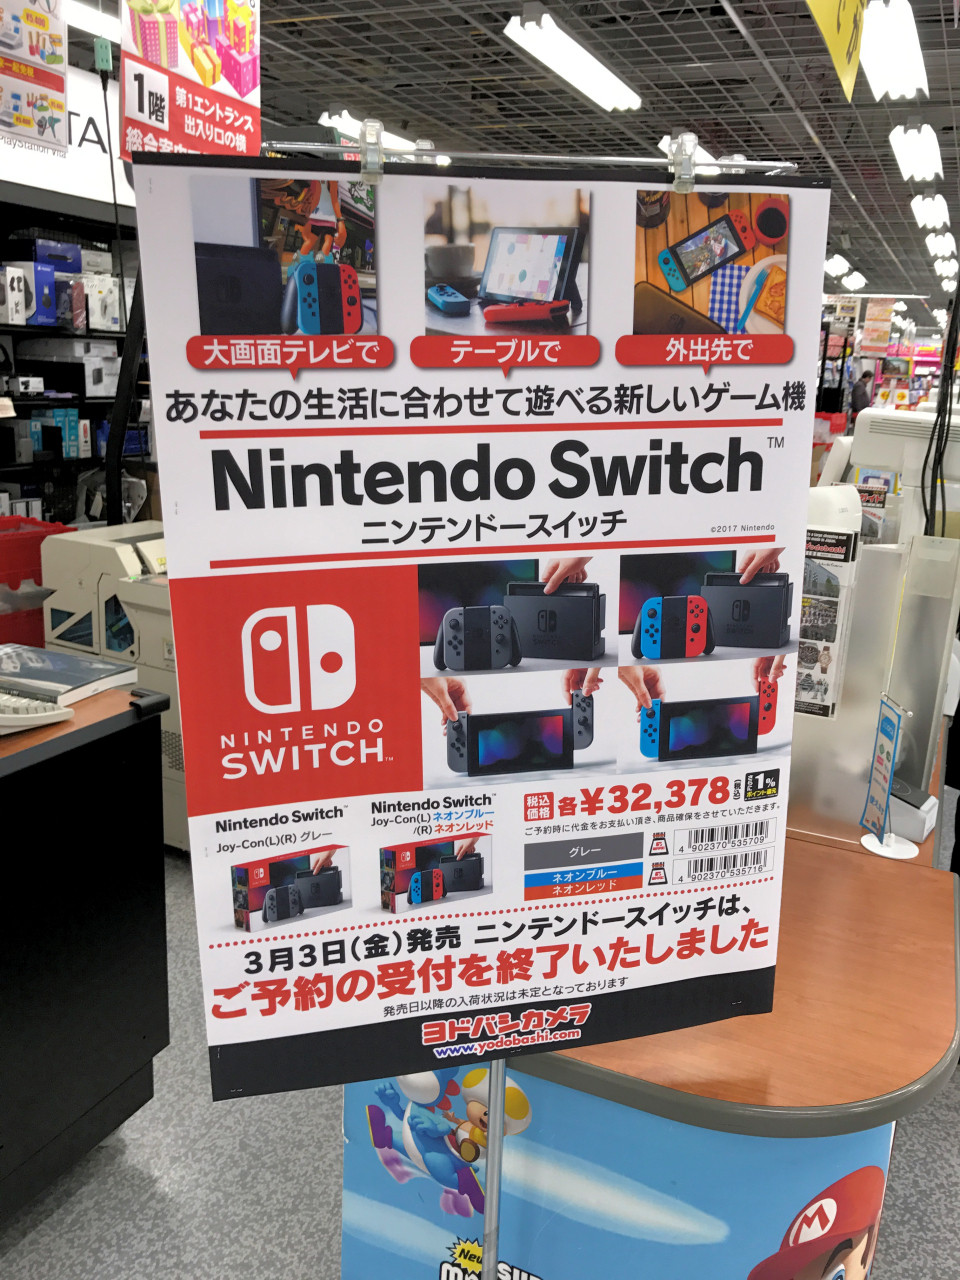 Nintendo Switchのオンラインサービスと3DS後継機